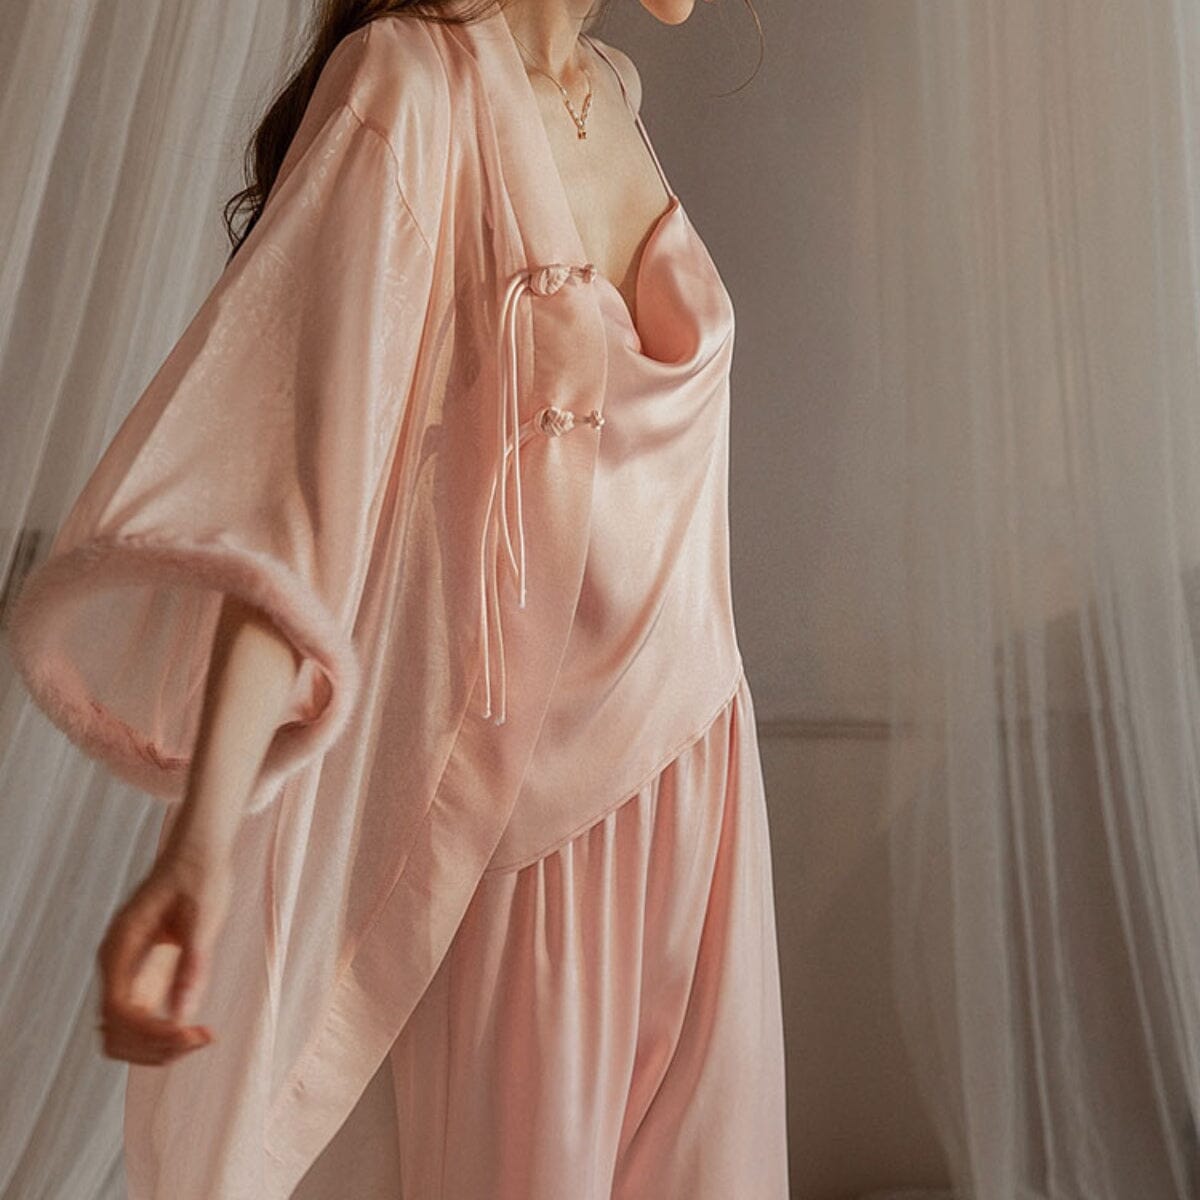 Ember satin robe Intimates LOVEFREYA 